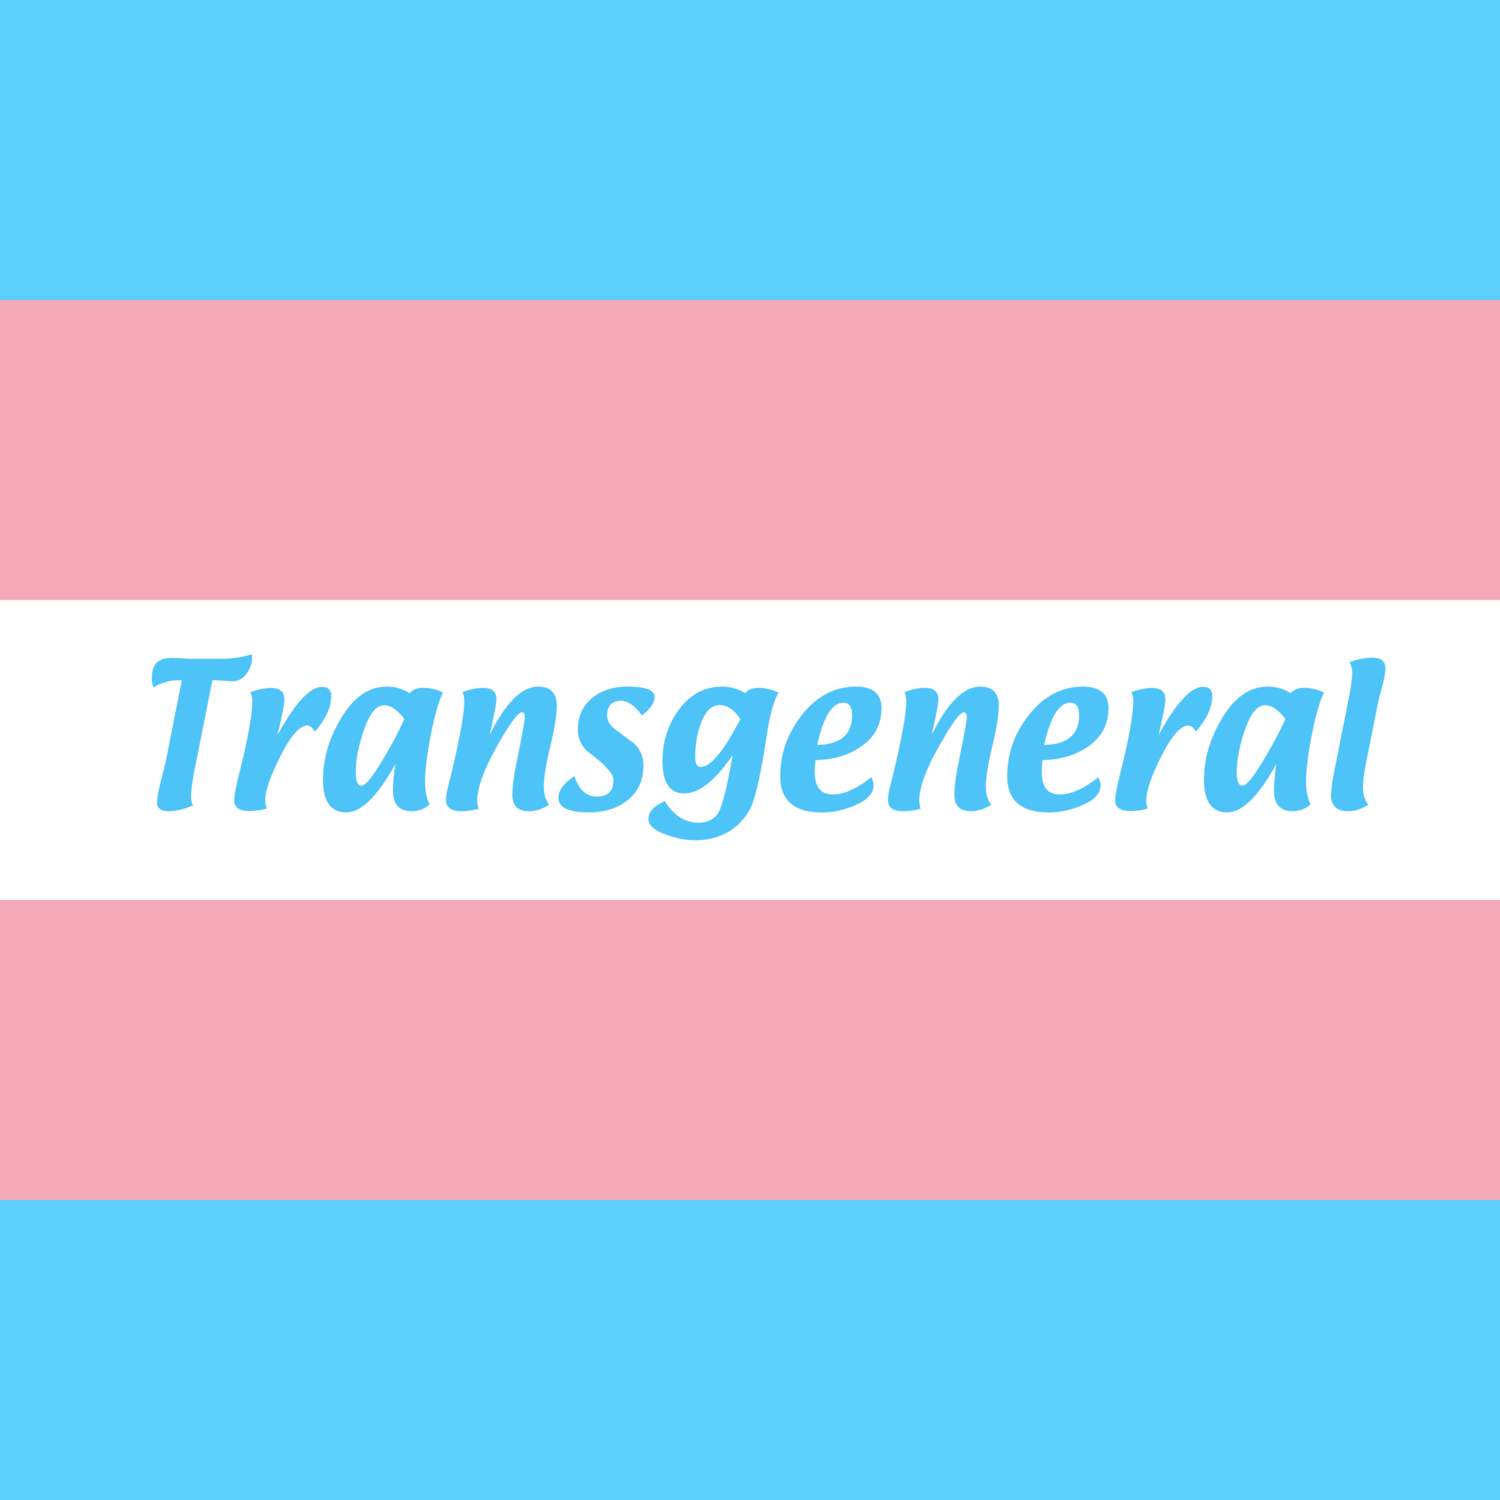 Transgeneral